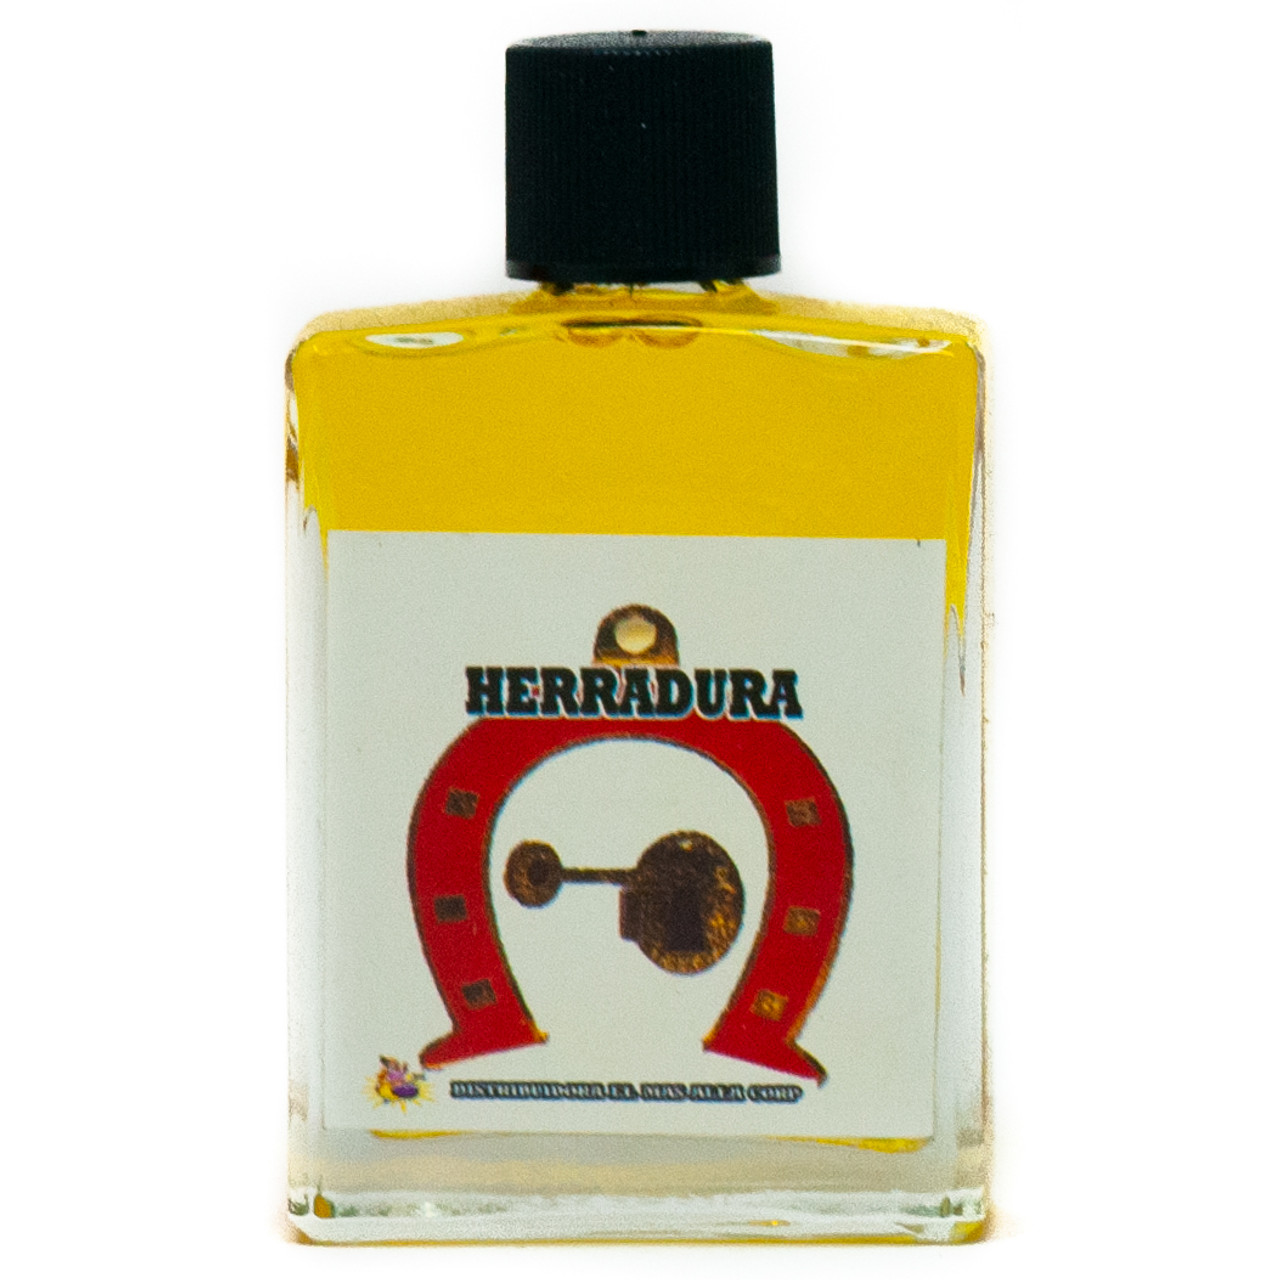 Perfume Herradura - Horseshoe Perfume